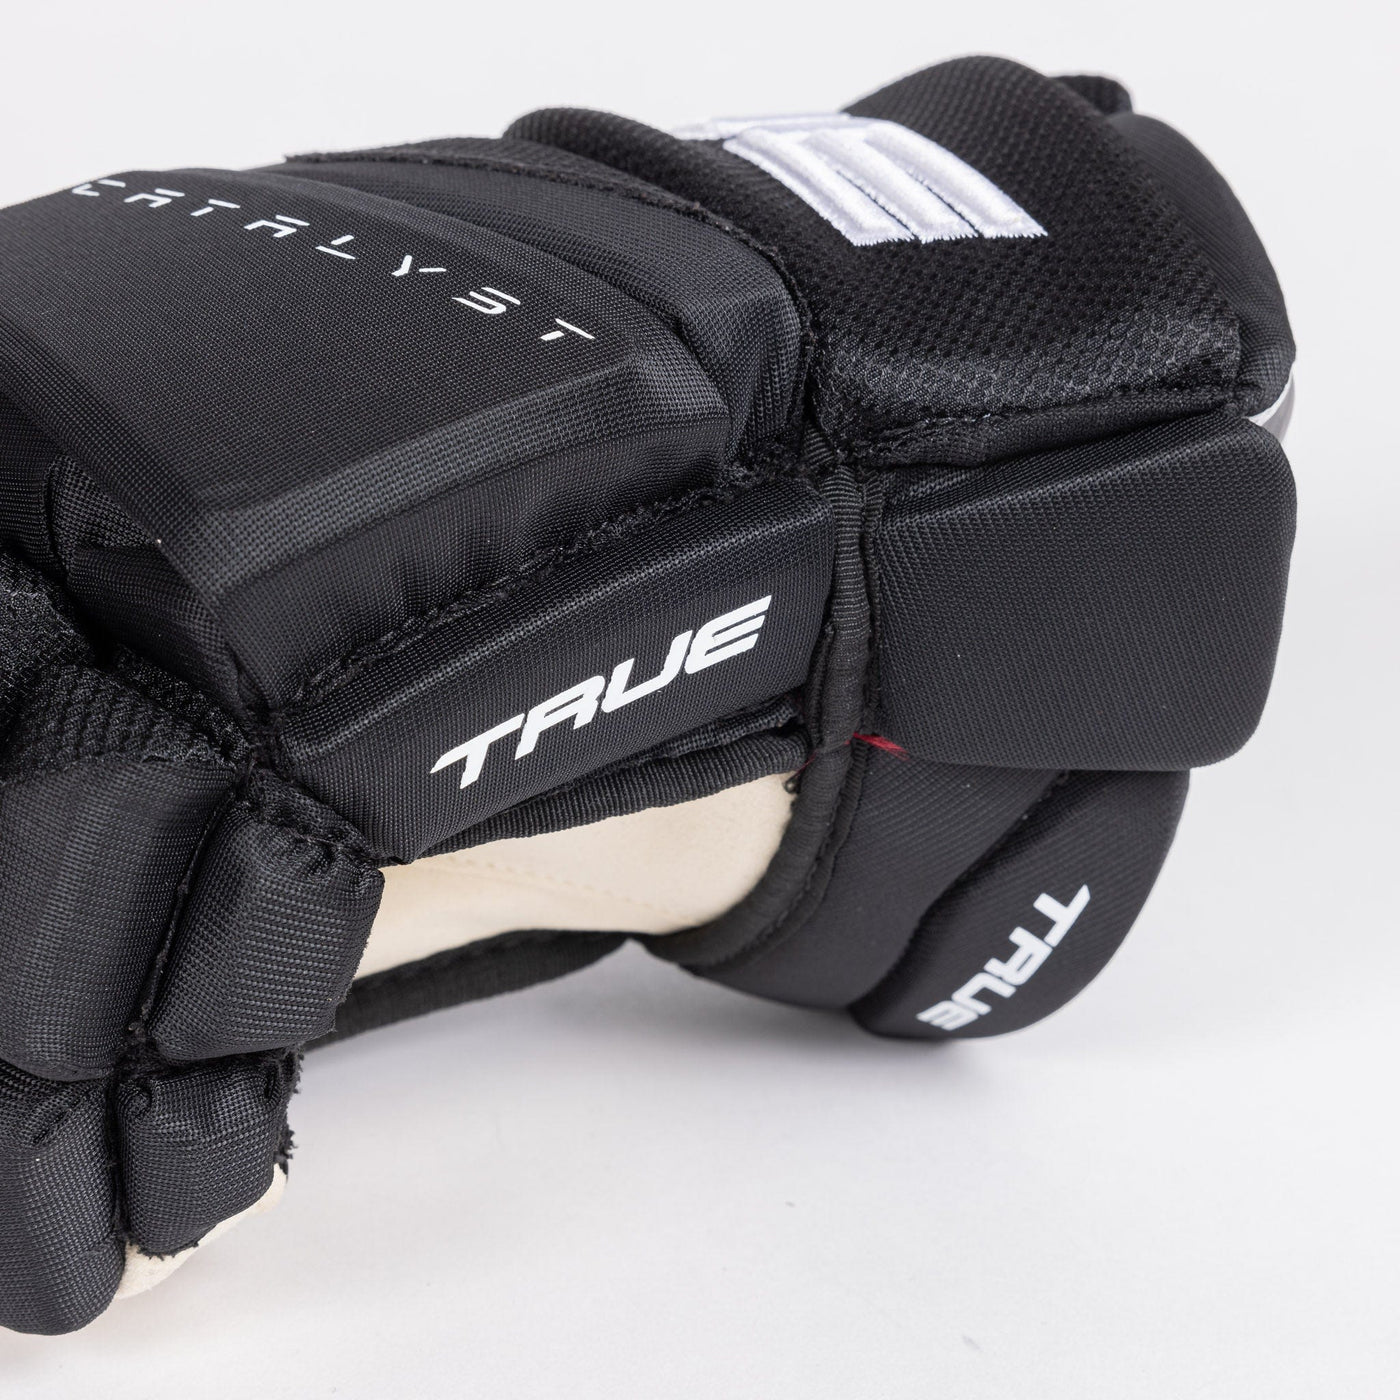 TRUE Catalyst Pro Stock Senior Hockey Glove - Carolina - The Hockey Shop Source For Sports